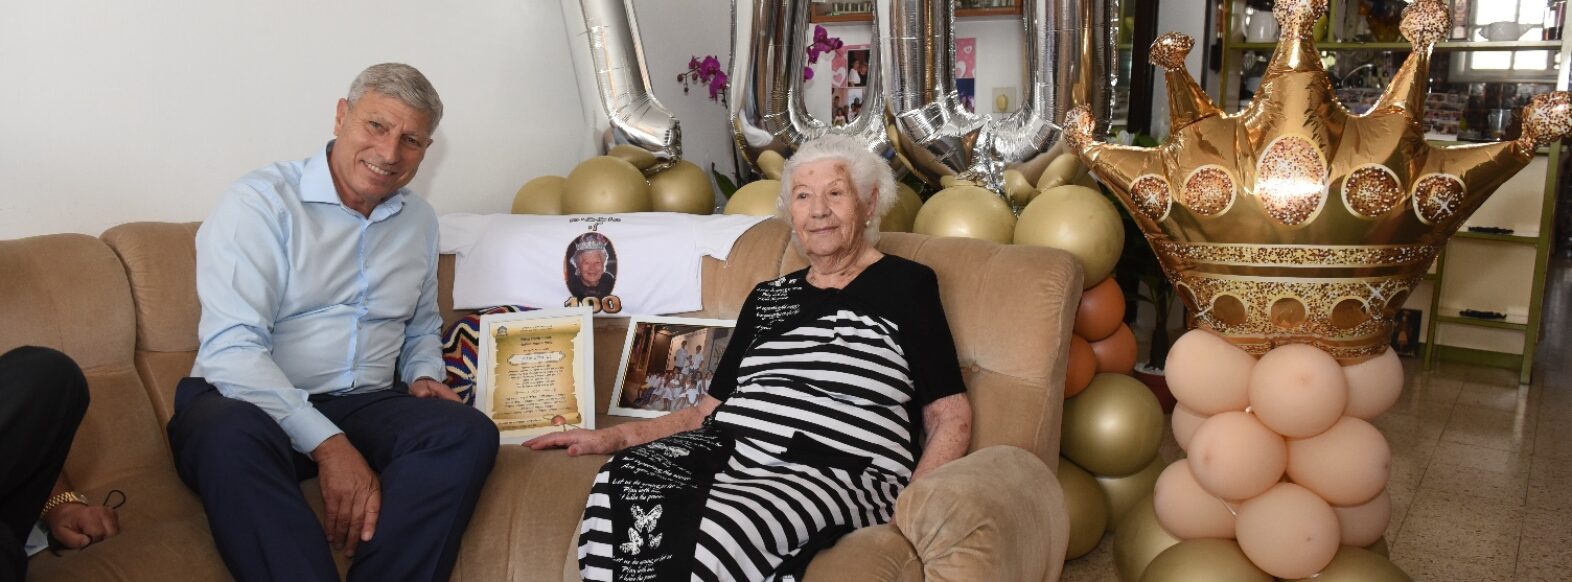 קריית אתא- חוגגים יום הולדת 100 לתושבת העיר אליס שטיין